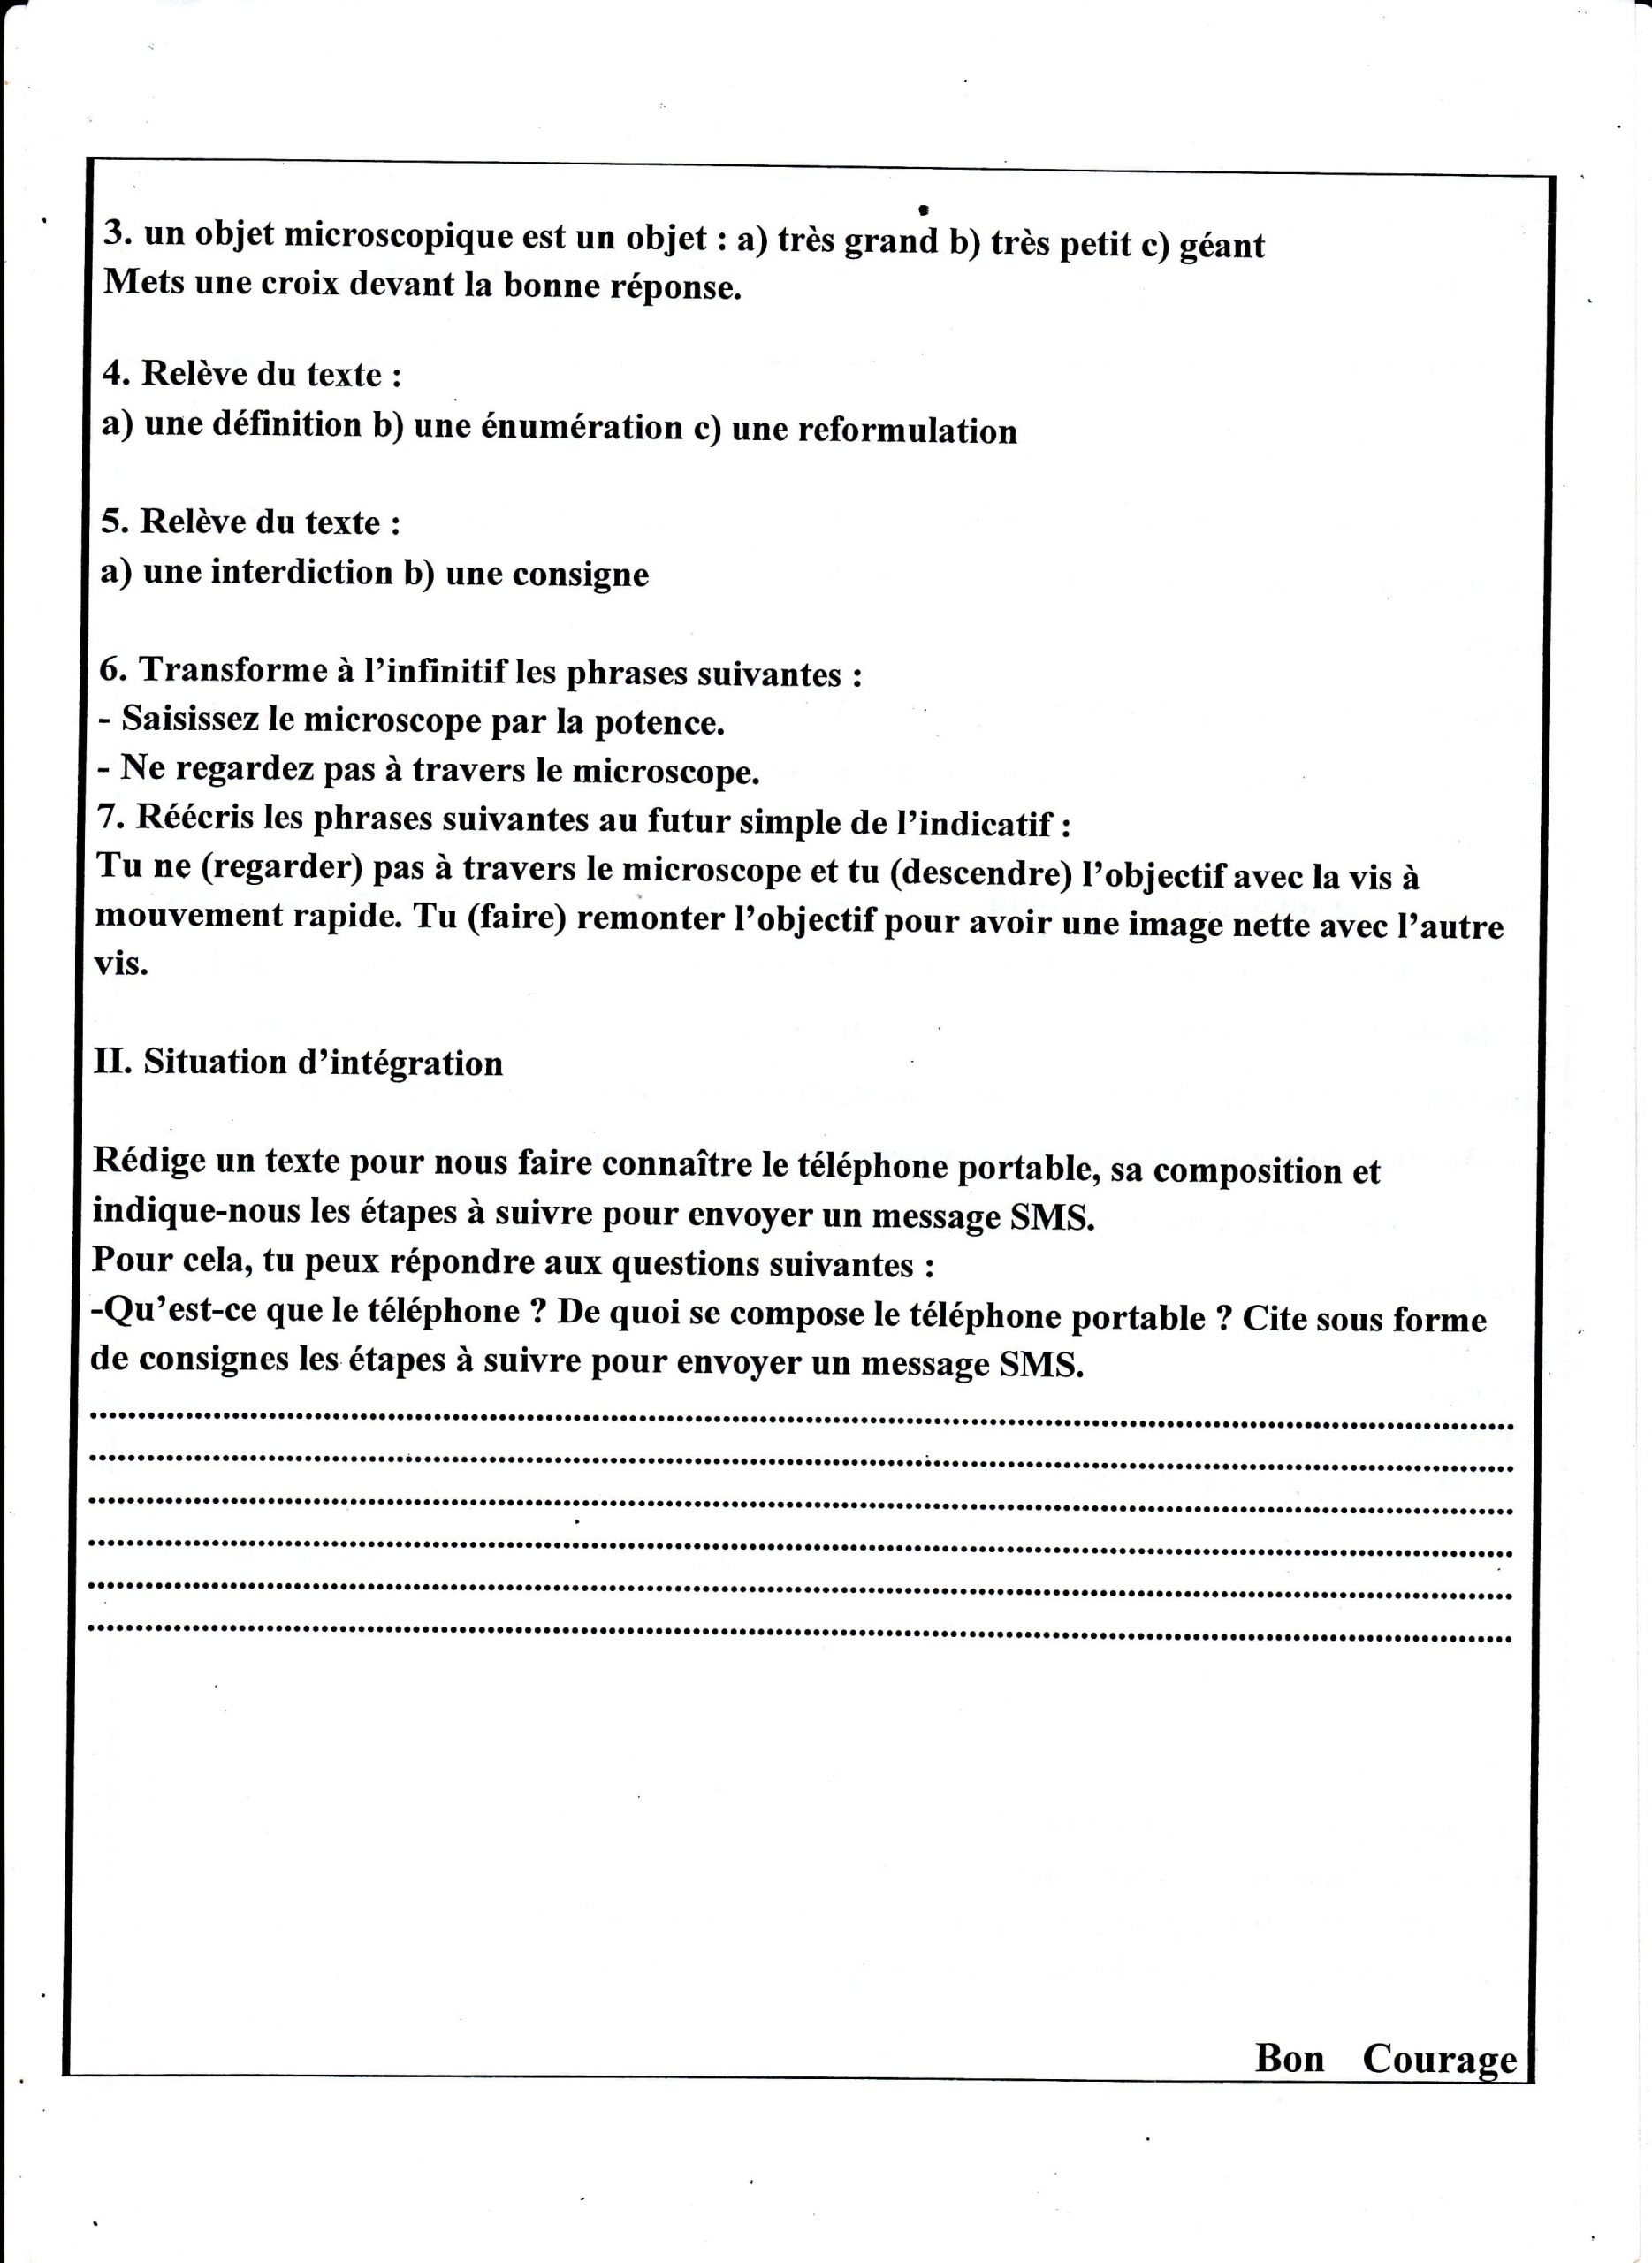 اختبار الفصل الثالث في اللغة الفرنسية للسنة الأولى متوسط - الموضوع 03